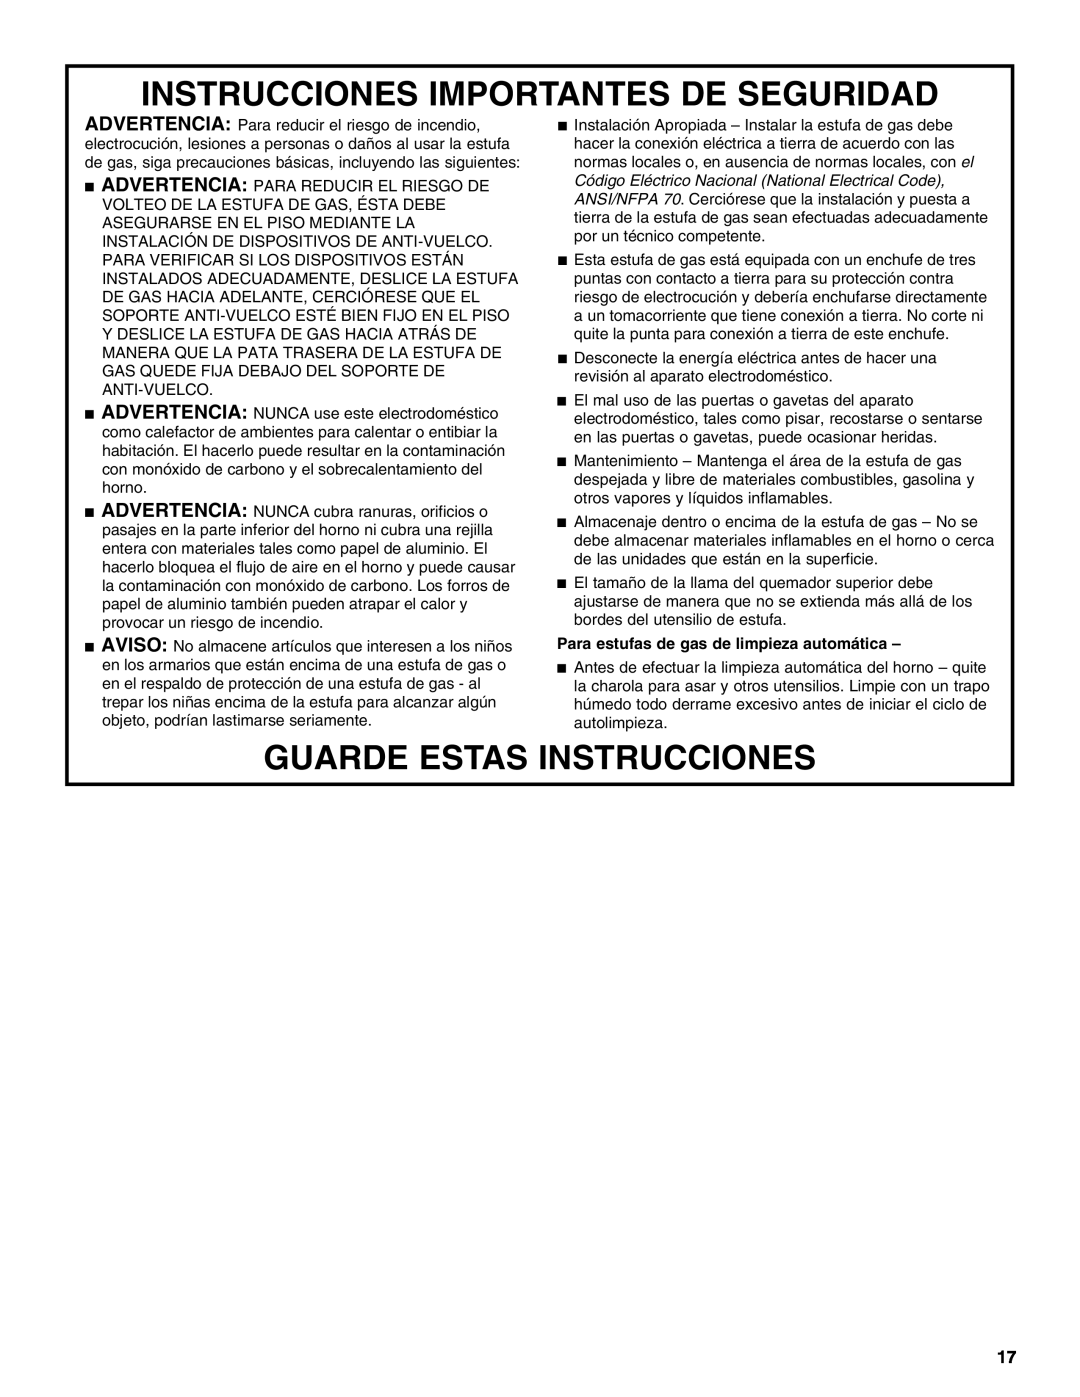 Whirlpool W10099480 manual Instrucciones Importantes De Seguridad, Guarde Estas Instrucciones 